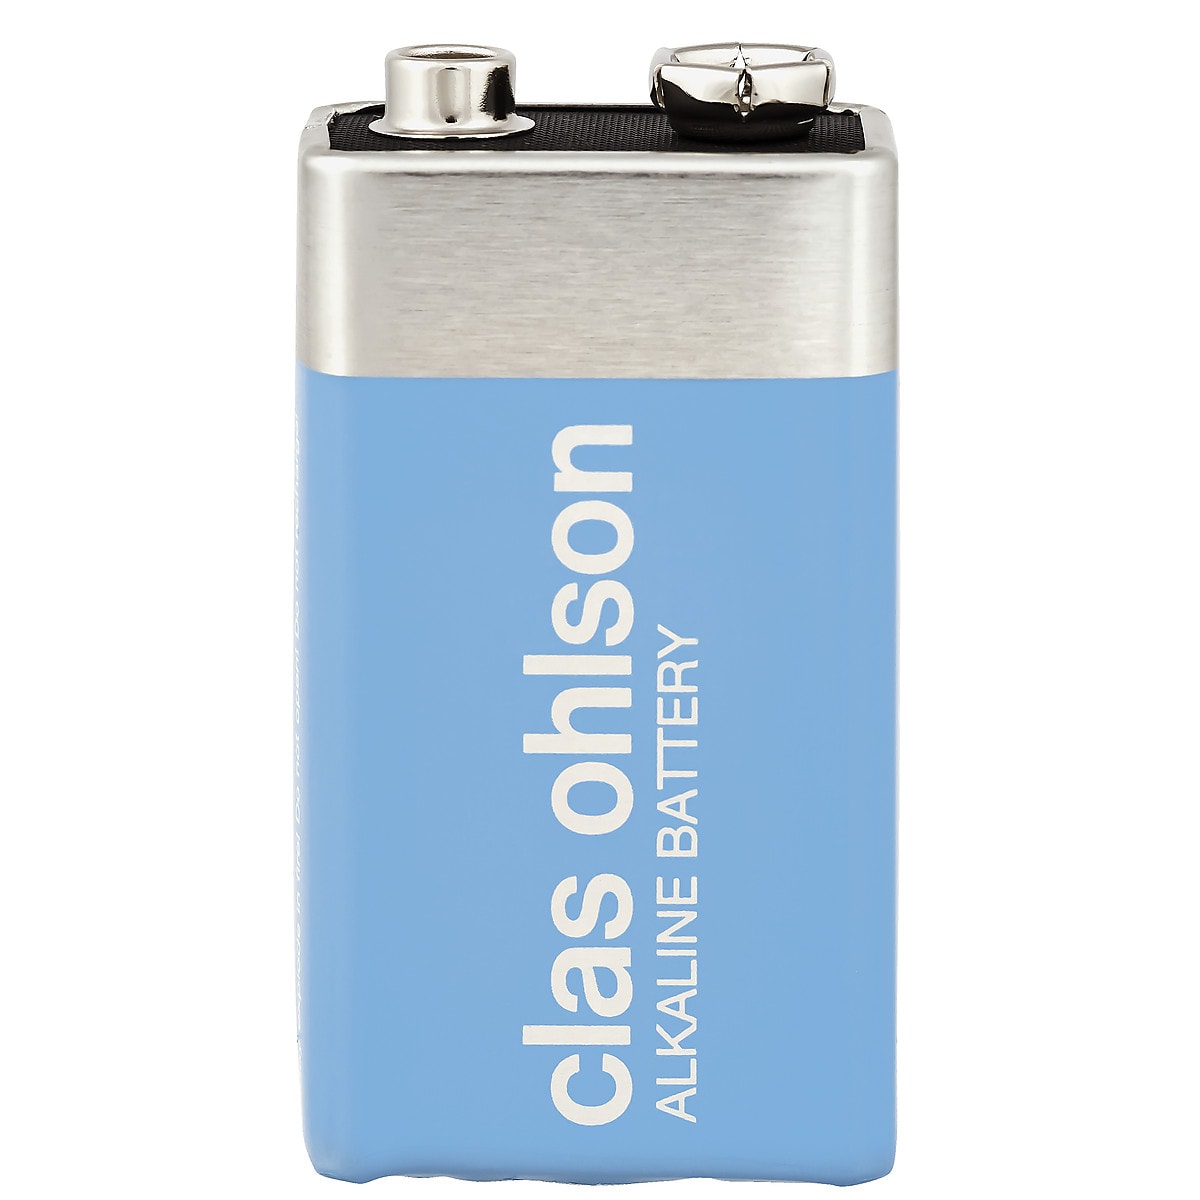 Clas Ohlson alkaliske batterier